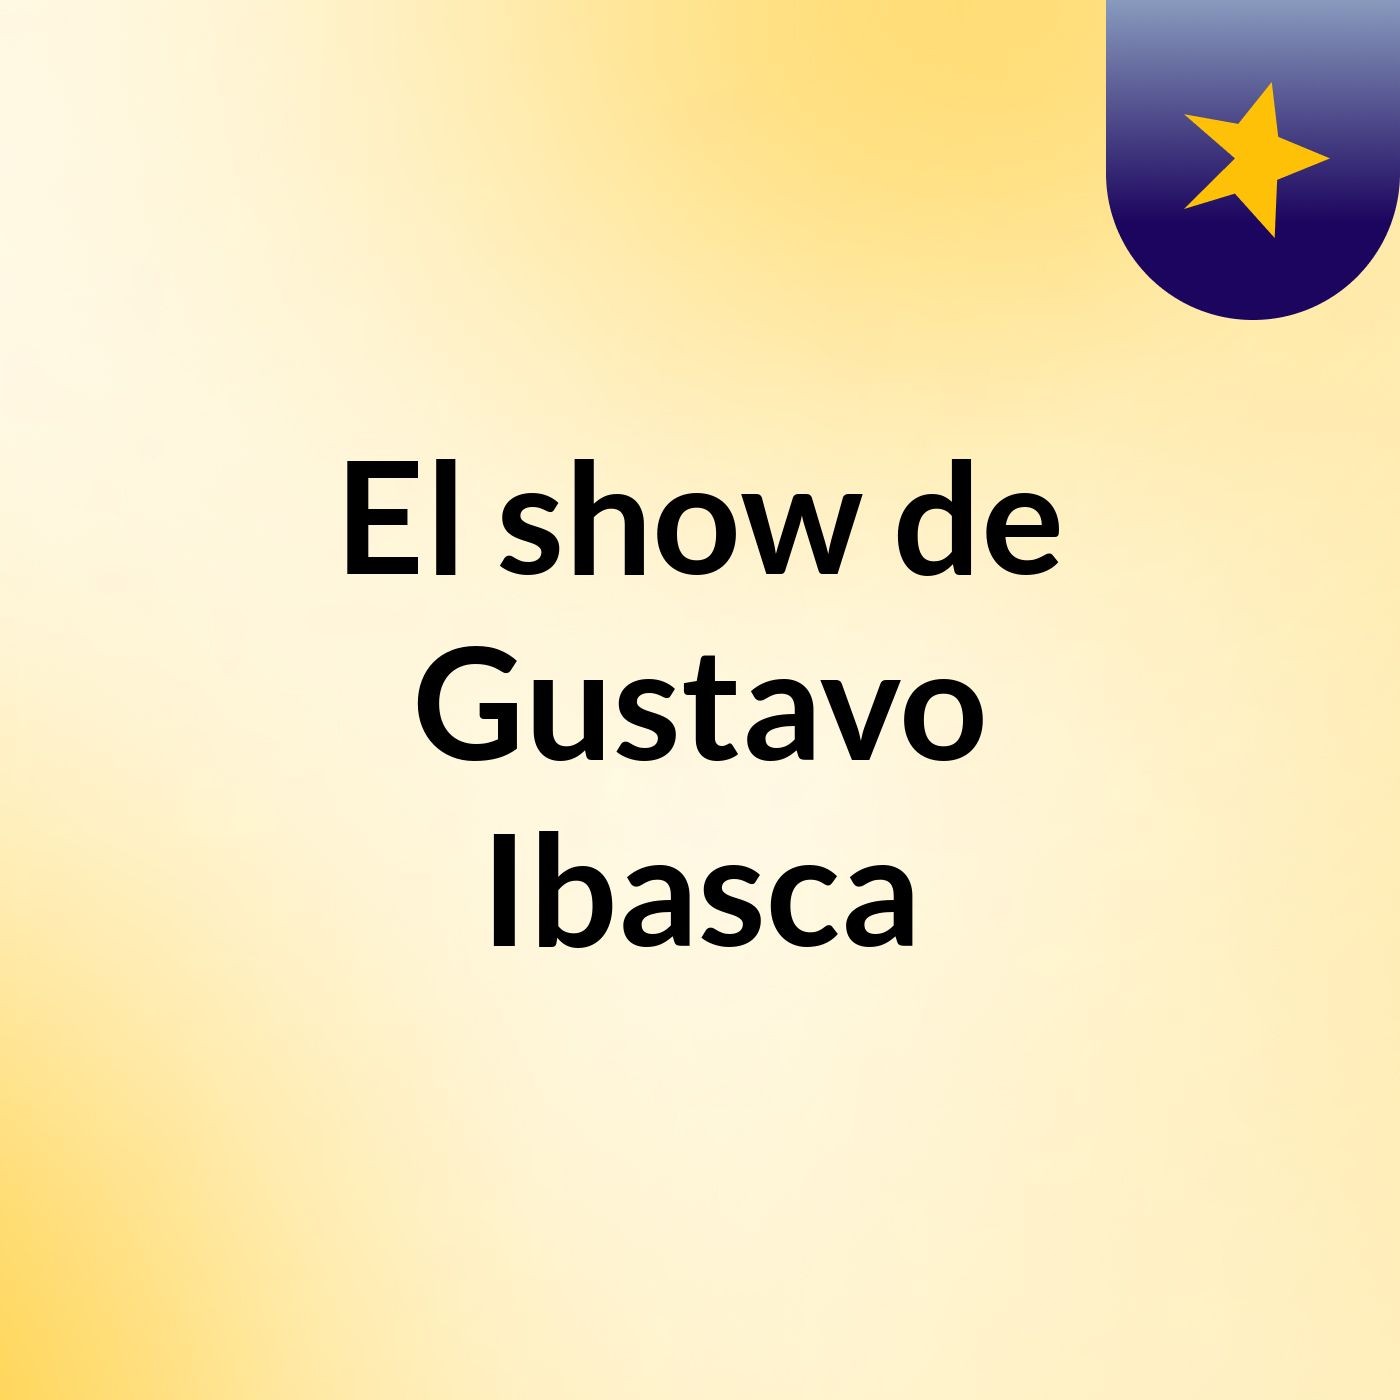 El show de Gustavo Ibasca